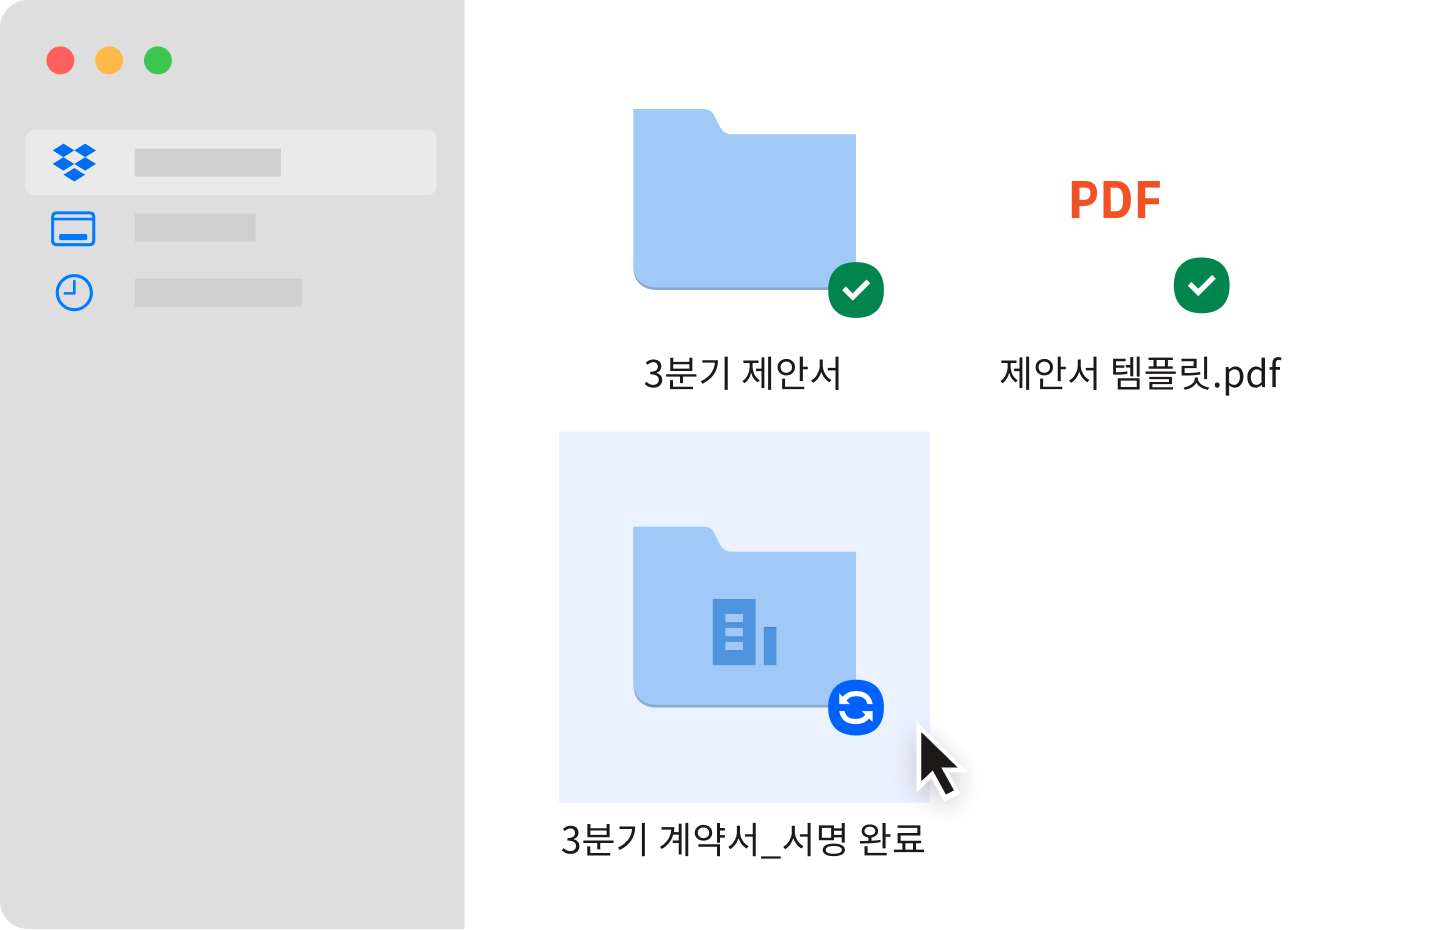 Dropbox 계정에 동기화된 두 개의 파란색 파일 폴더와 하나의 PDF 파일